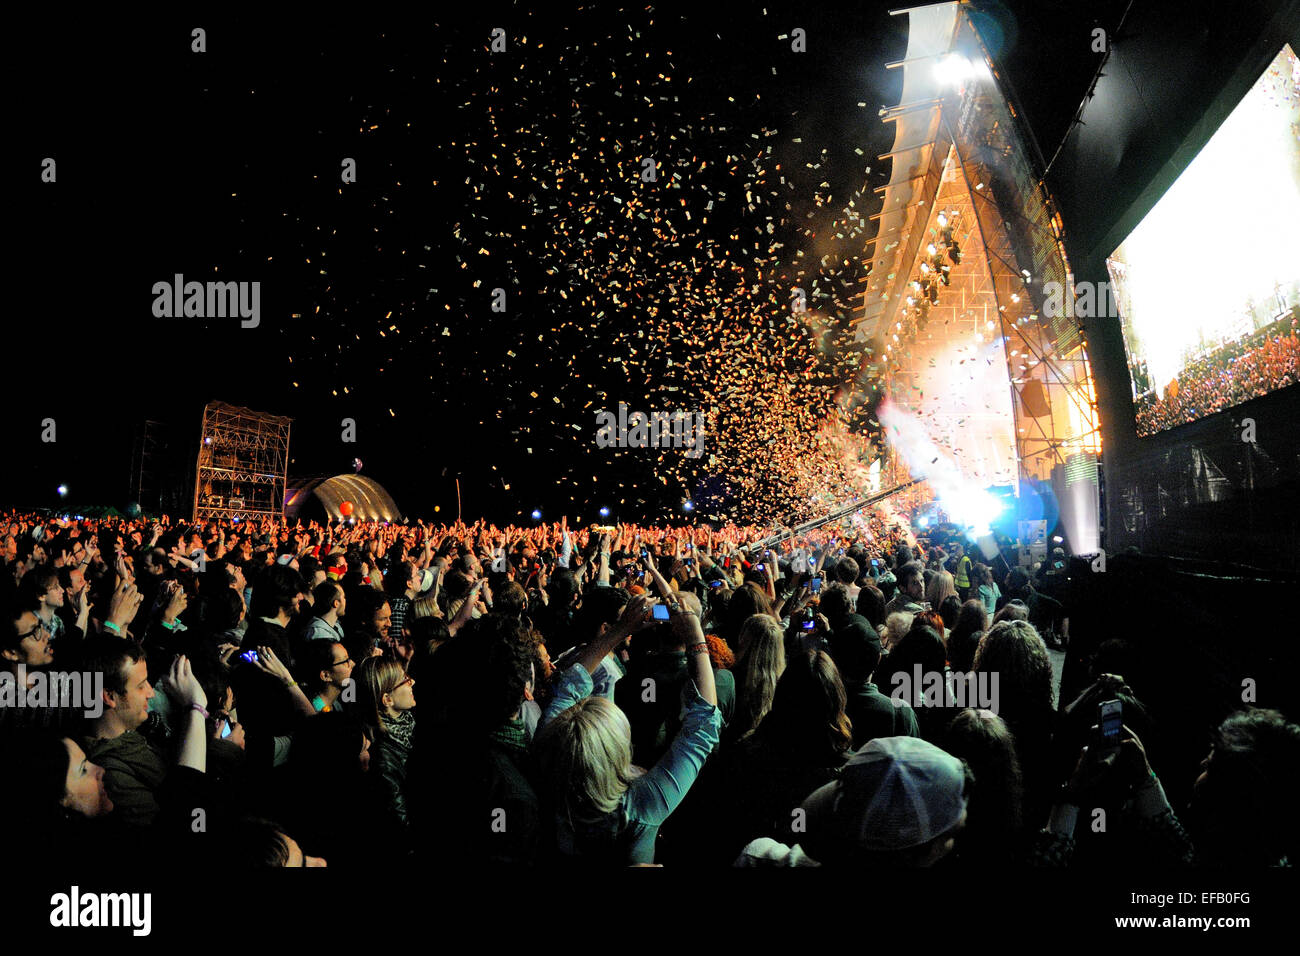 BARCELONA - 23 de mayo: Audiencia ver un concierto, mientras que lanza confeti desde el escenario en el Heineken Festival Primavera Sound 2013. Foto de stock